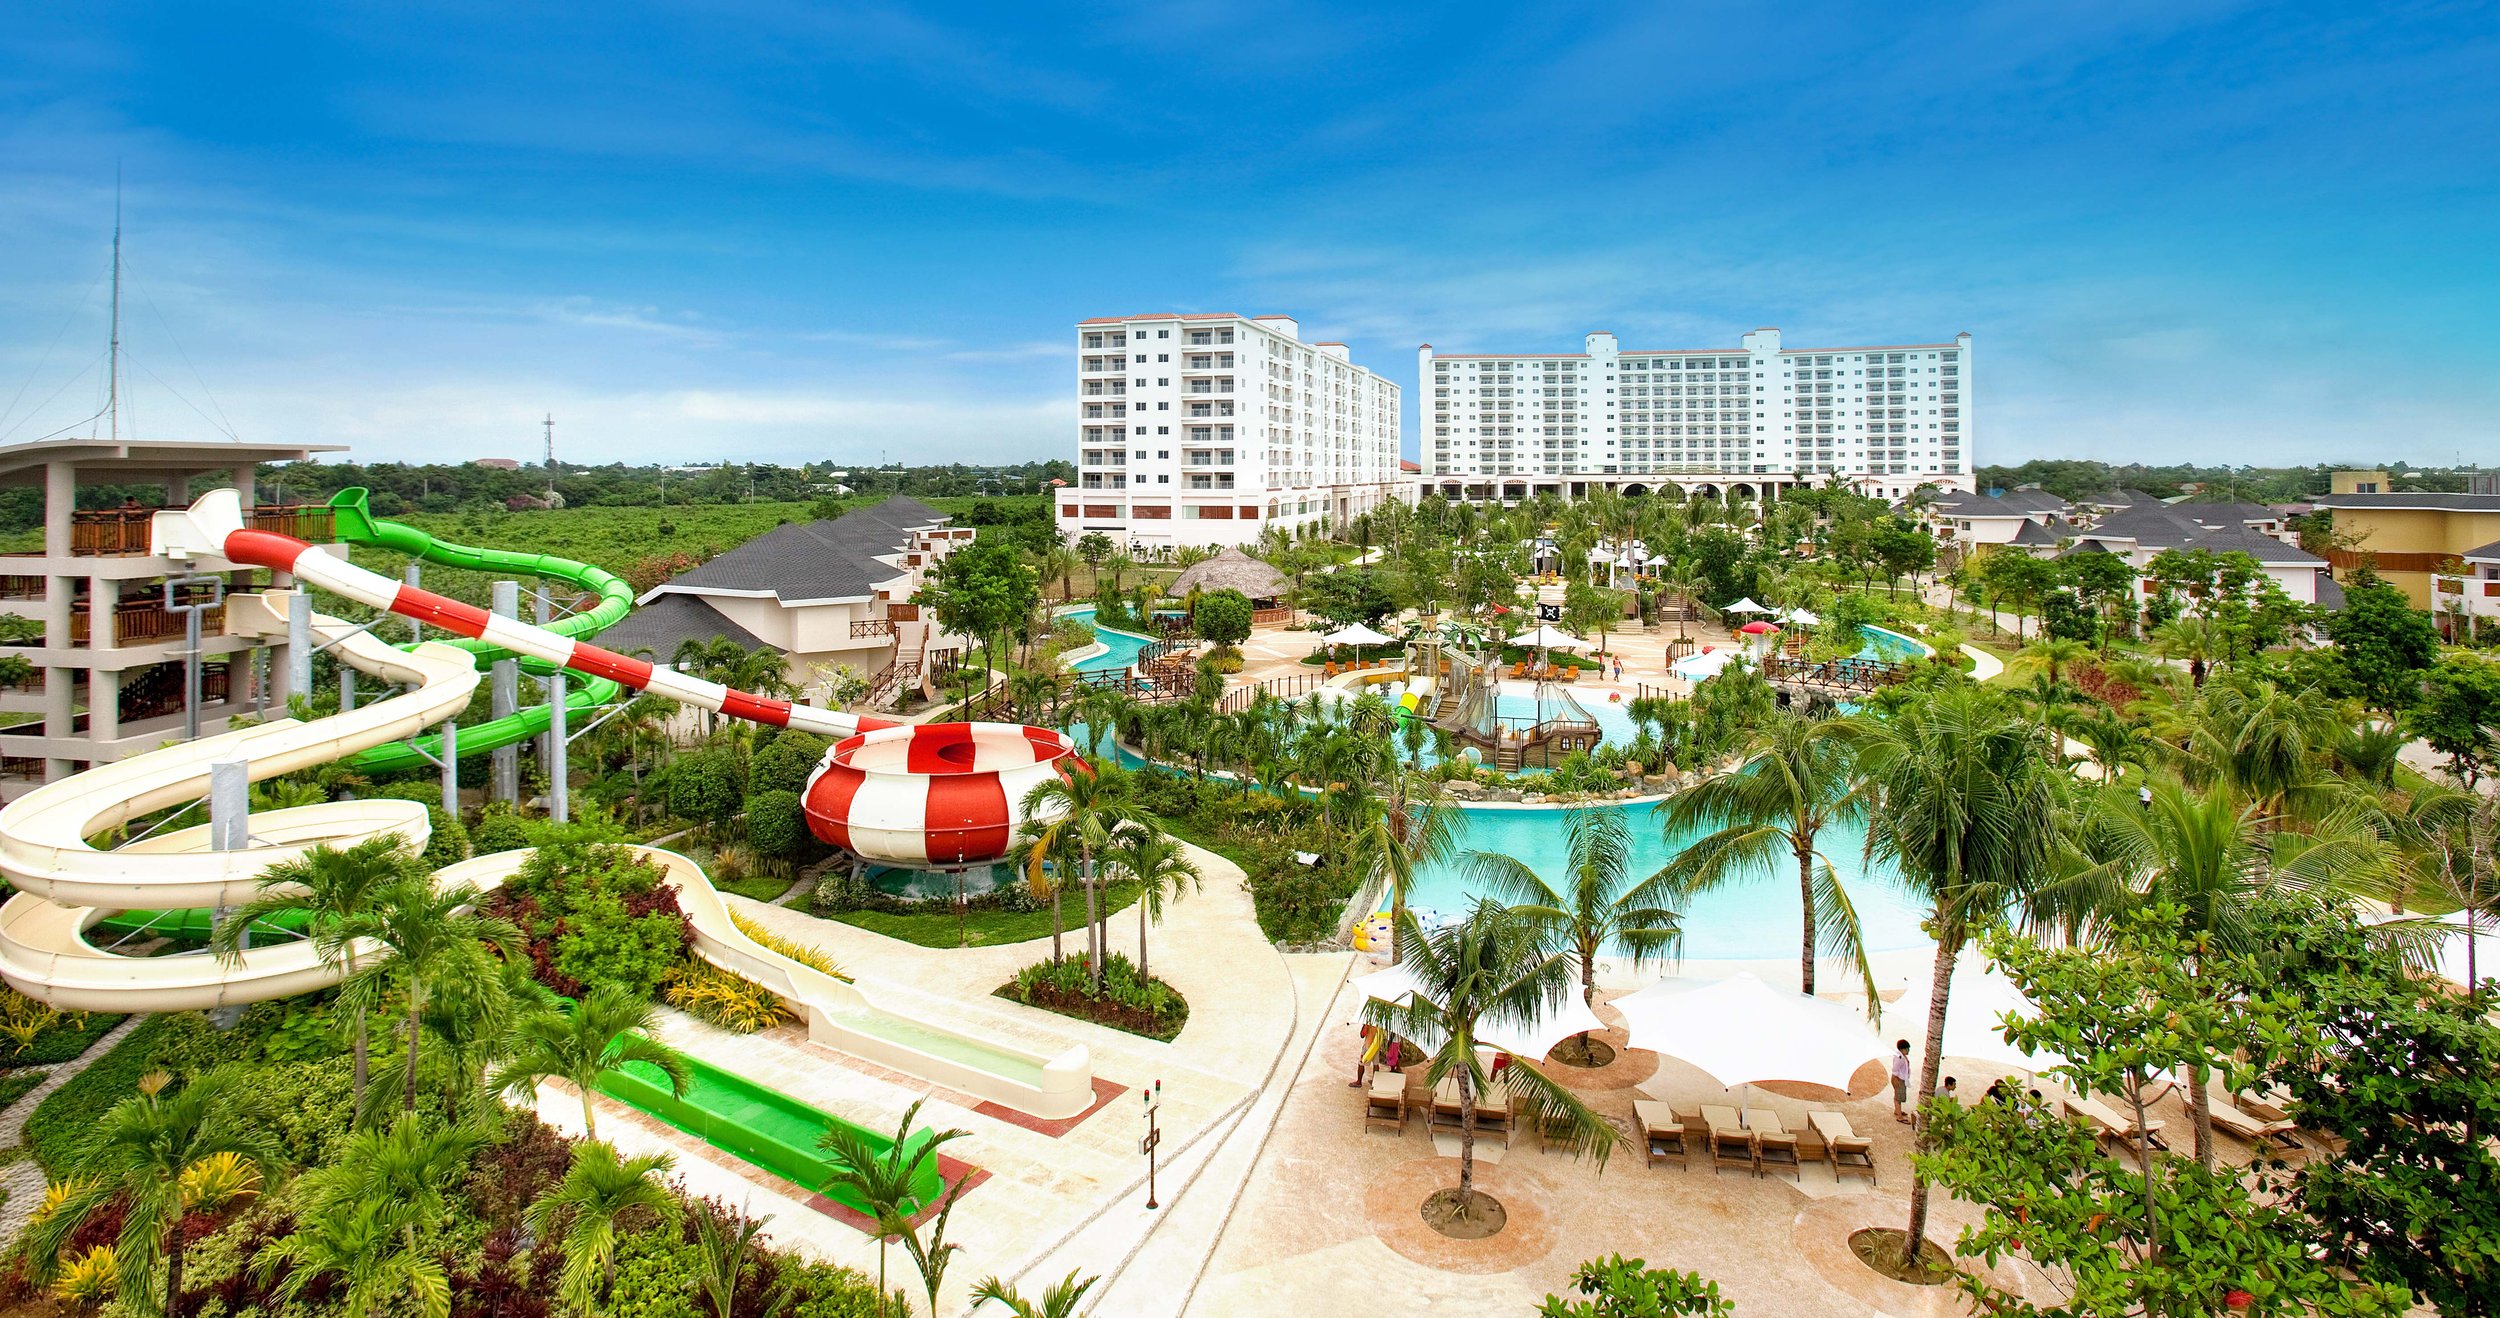  Jpark Island Resort 